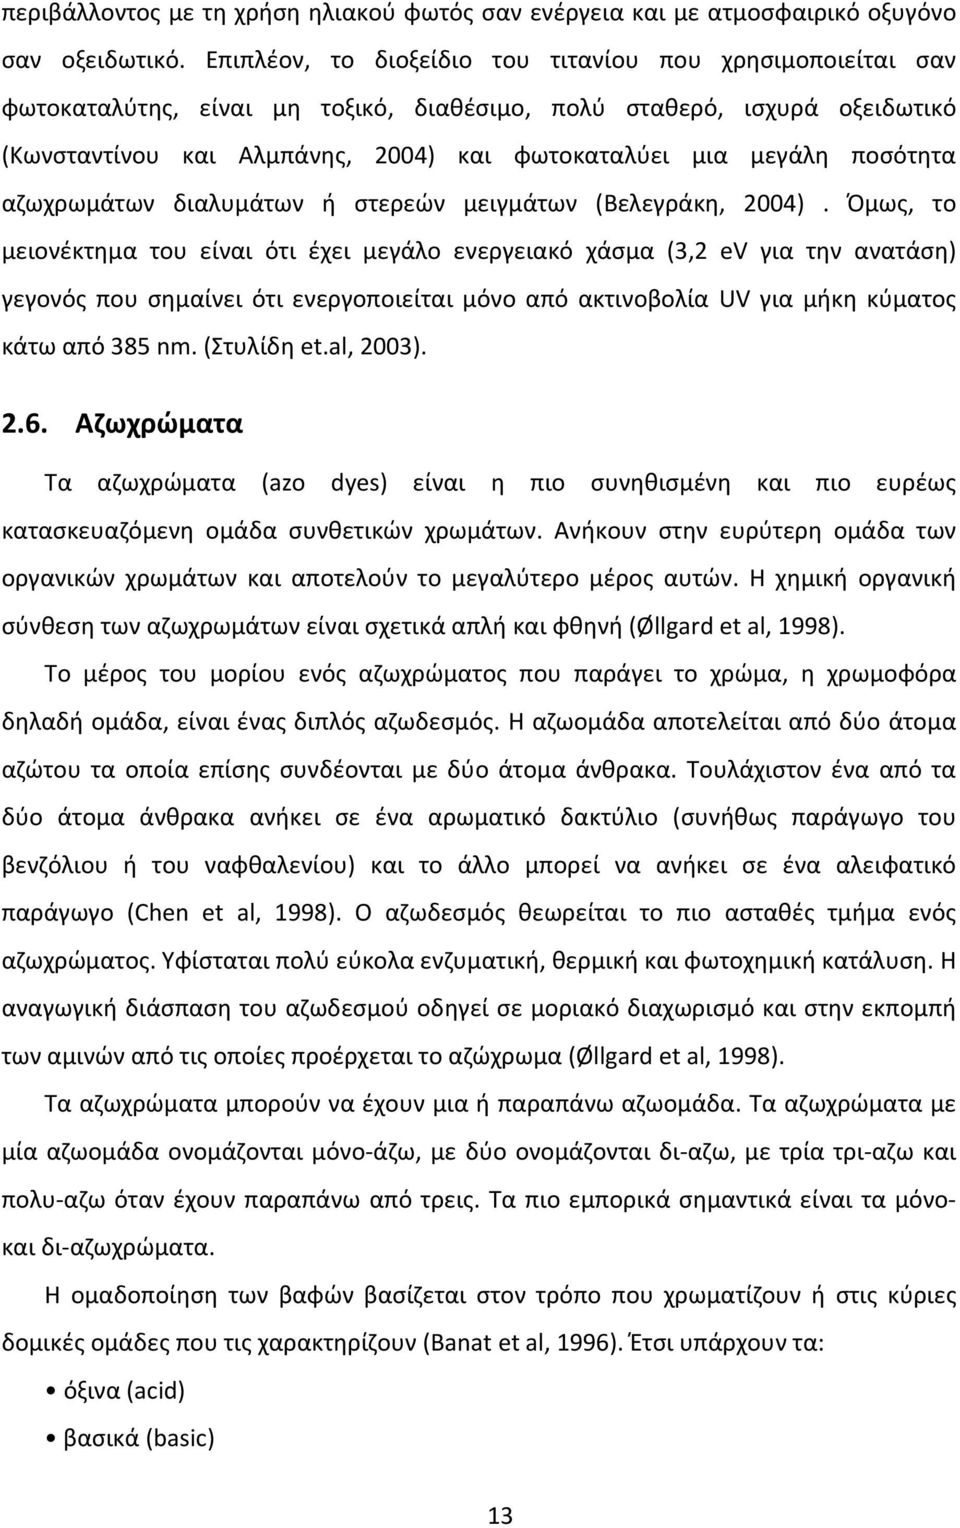 ποσότητα αζωχρωμάτων διαλυμάτων ή στερεών μειγμάτων (Βελεγράκη, 2004).